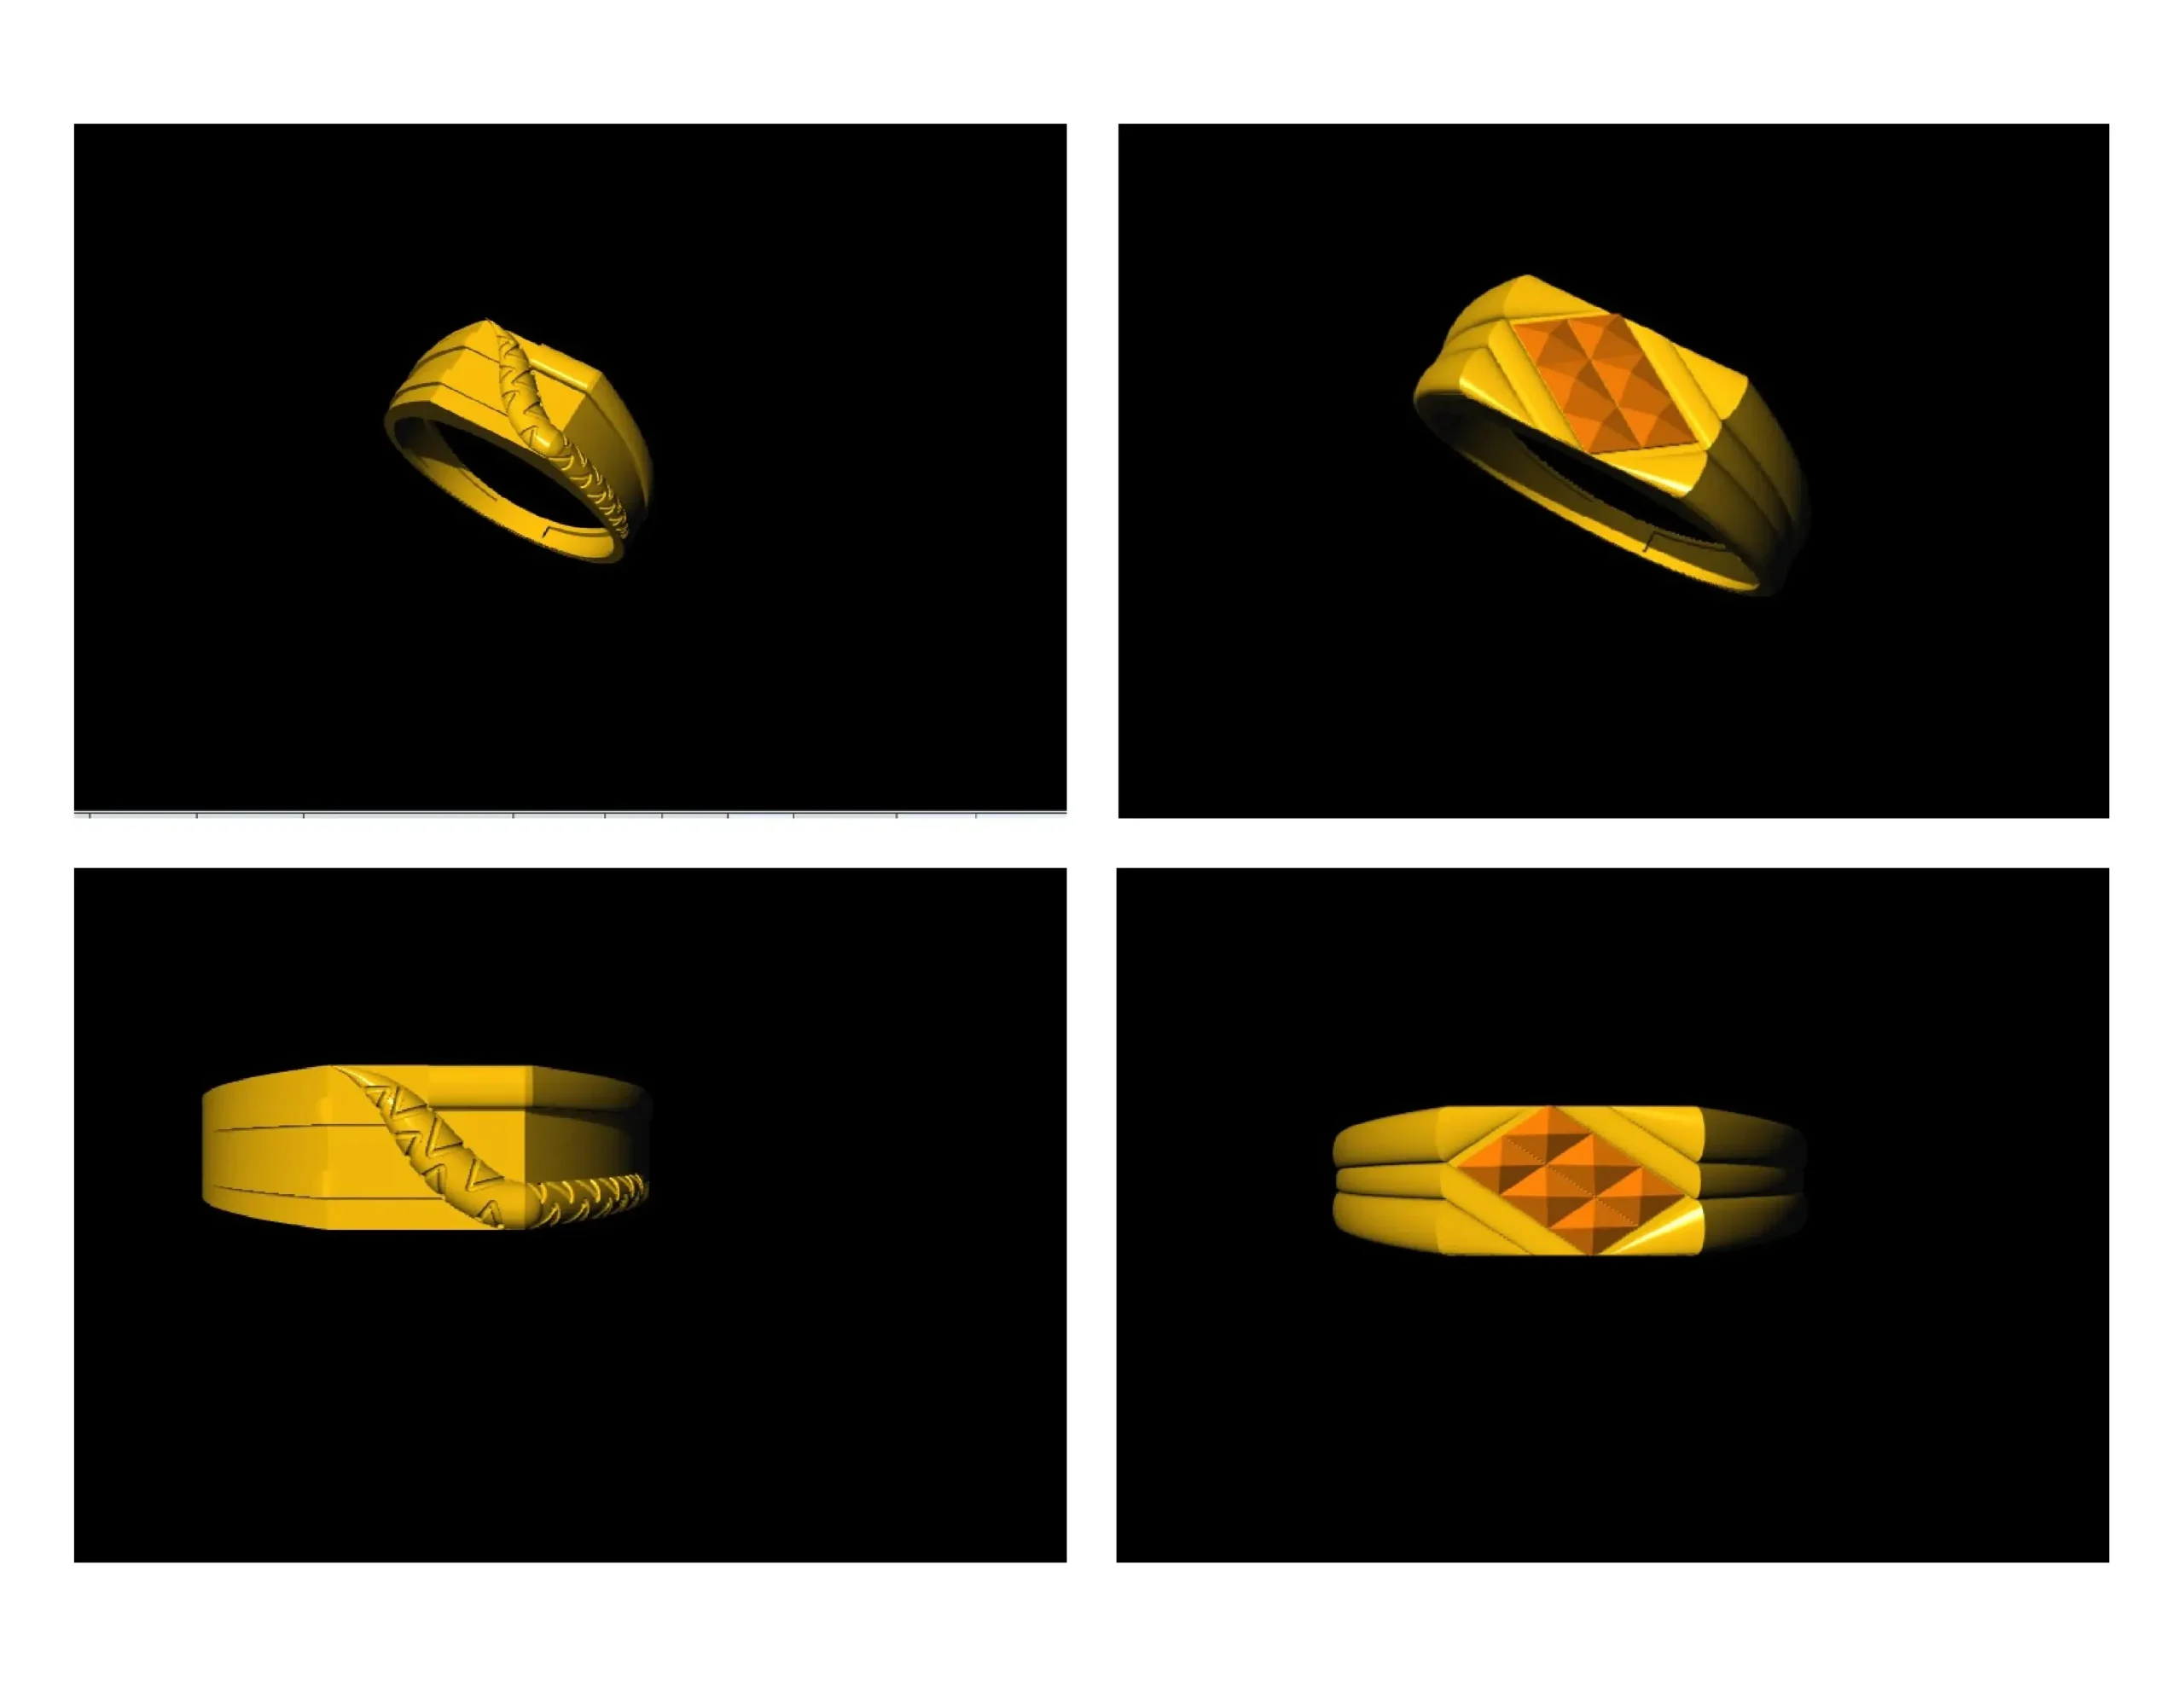 3D Gold Ring File CAD Design Engagement Ring Model 3dm Format14 3D model 3D  printable | CGTrader